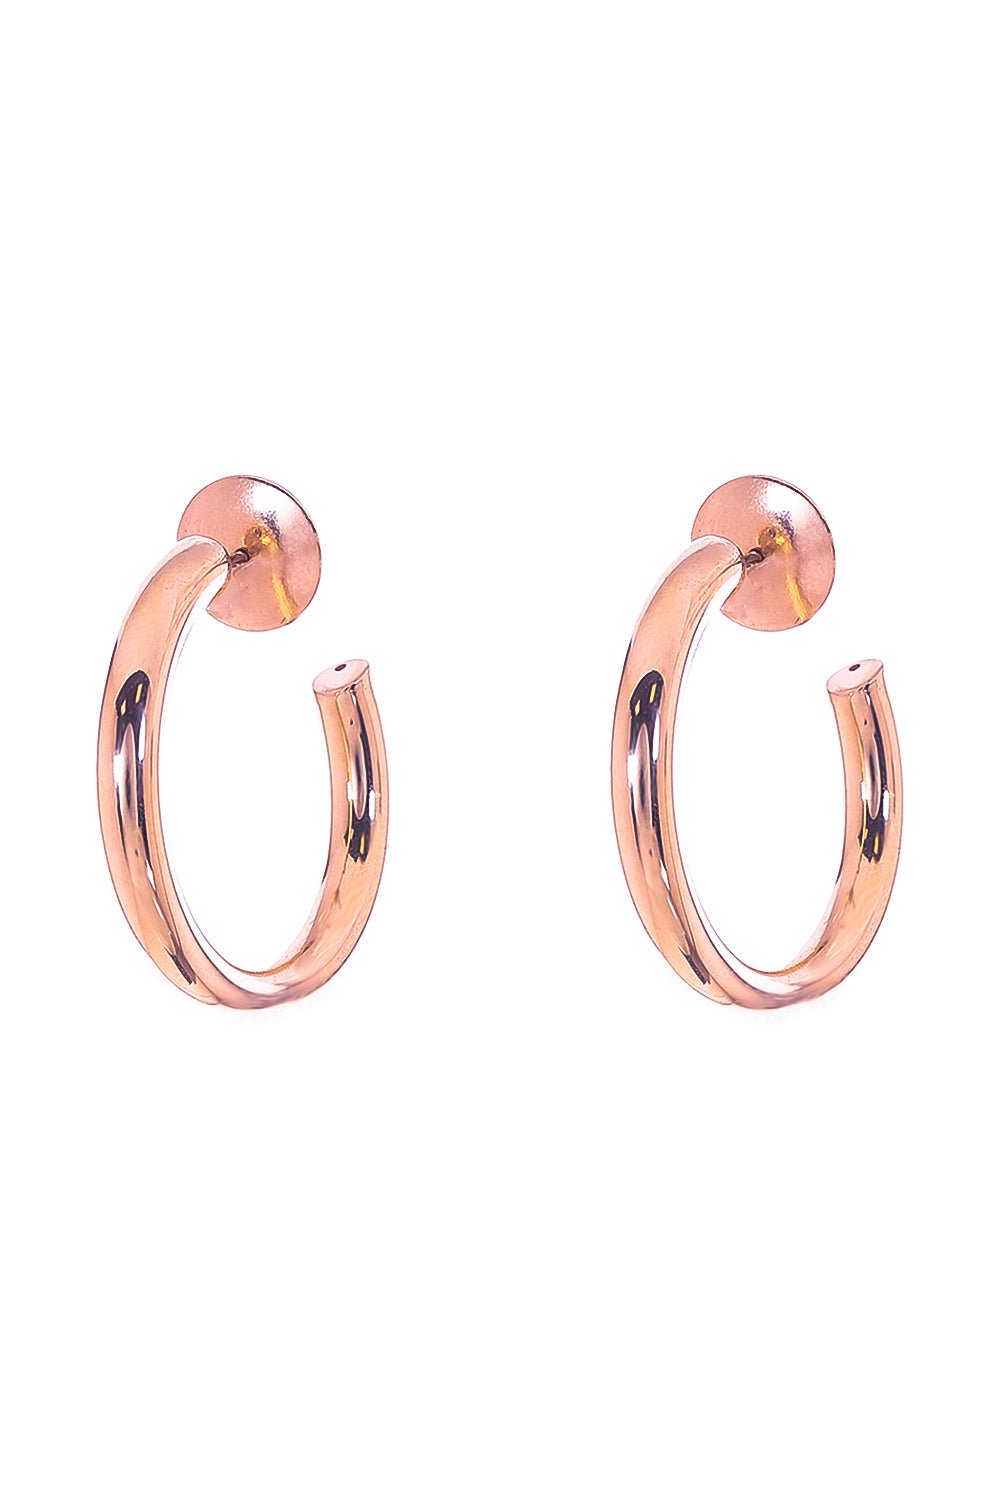 SIDNEY GARBER-Mallory Hoop Earrings - 2.9cm-ROSE GOLD